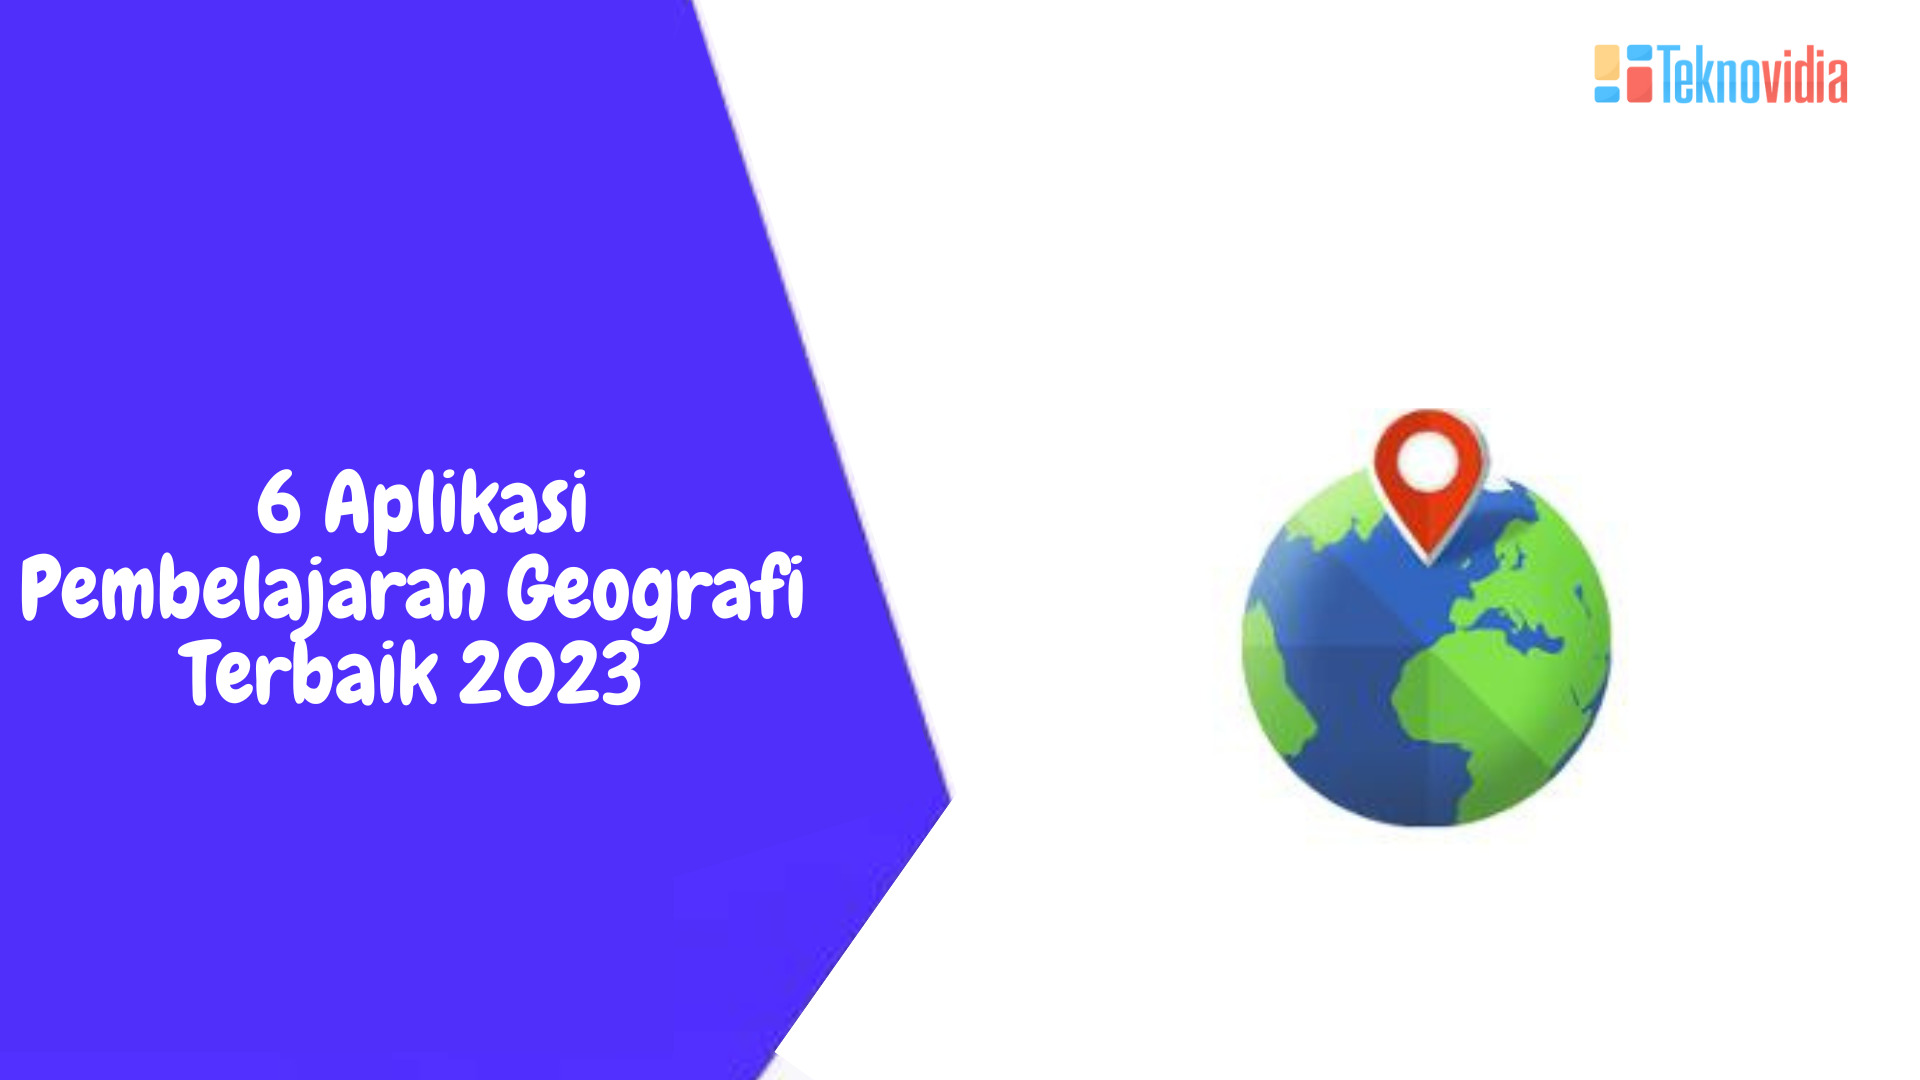 6 Aplikasi Pembelajaran Geografi Terbaik 2023